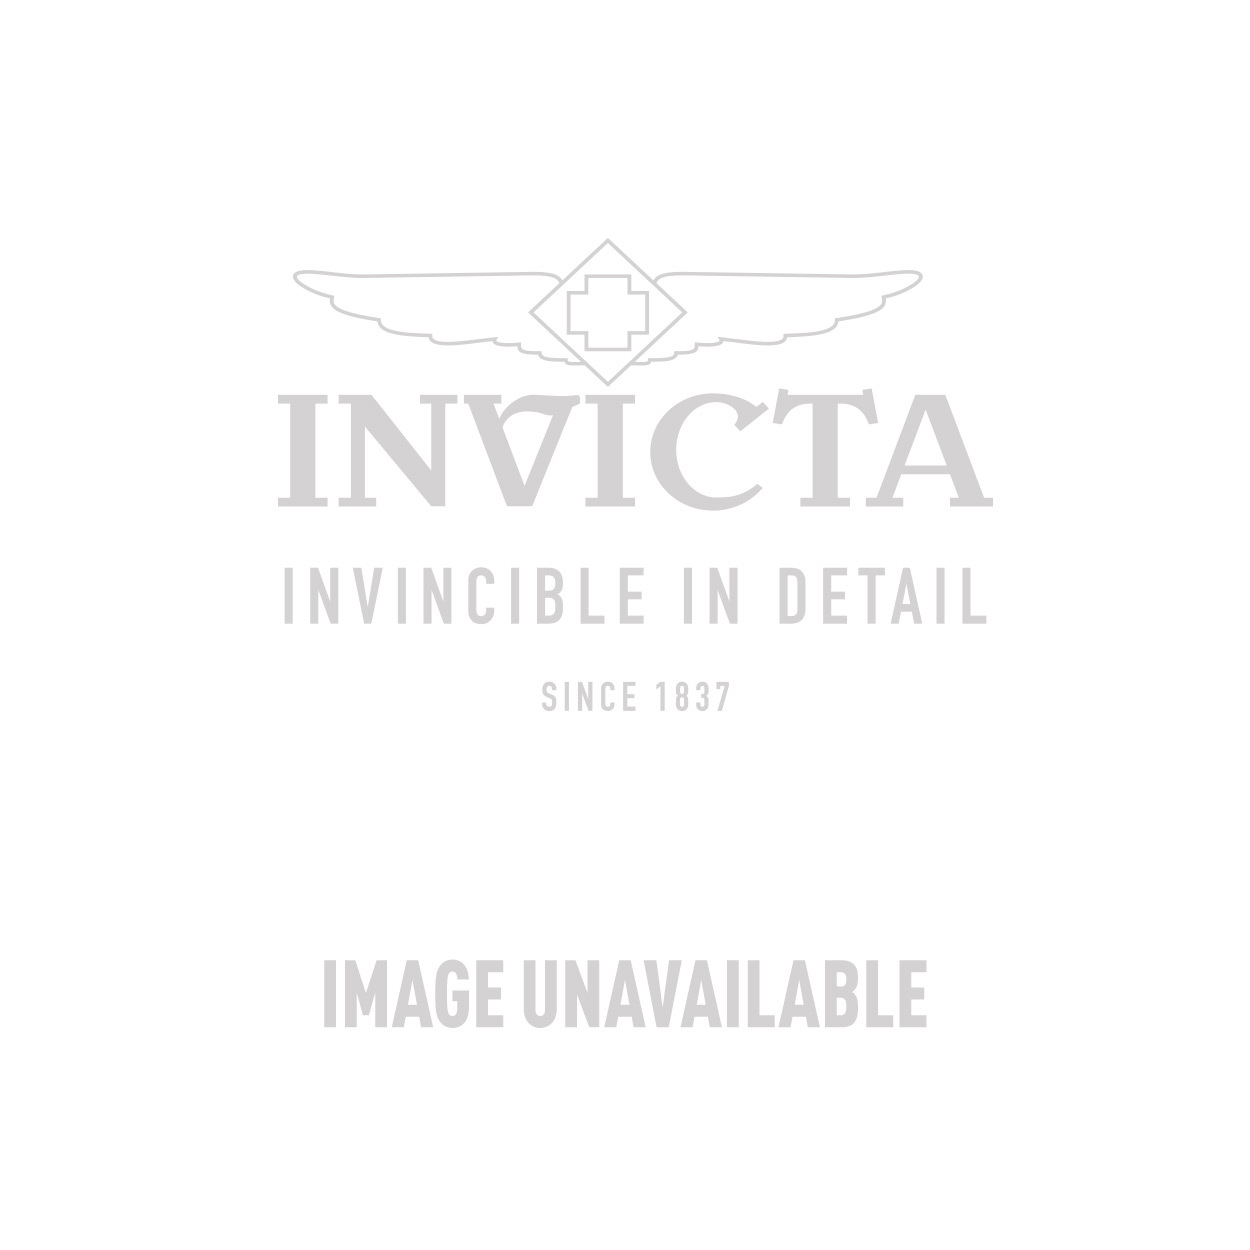 Invicta Speedway Men's Watch (Mod: 46888) | Invicta Watches